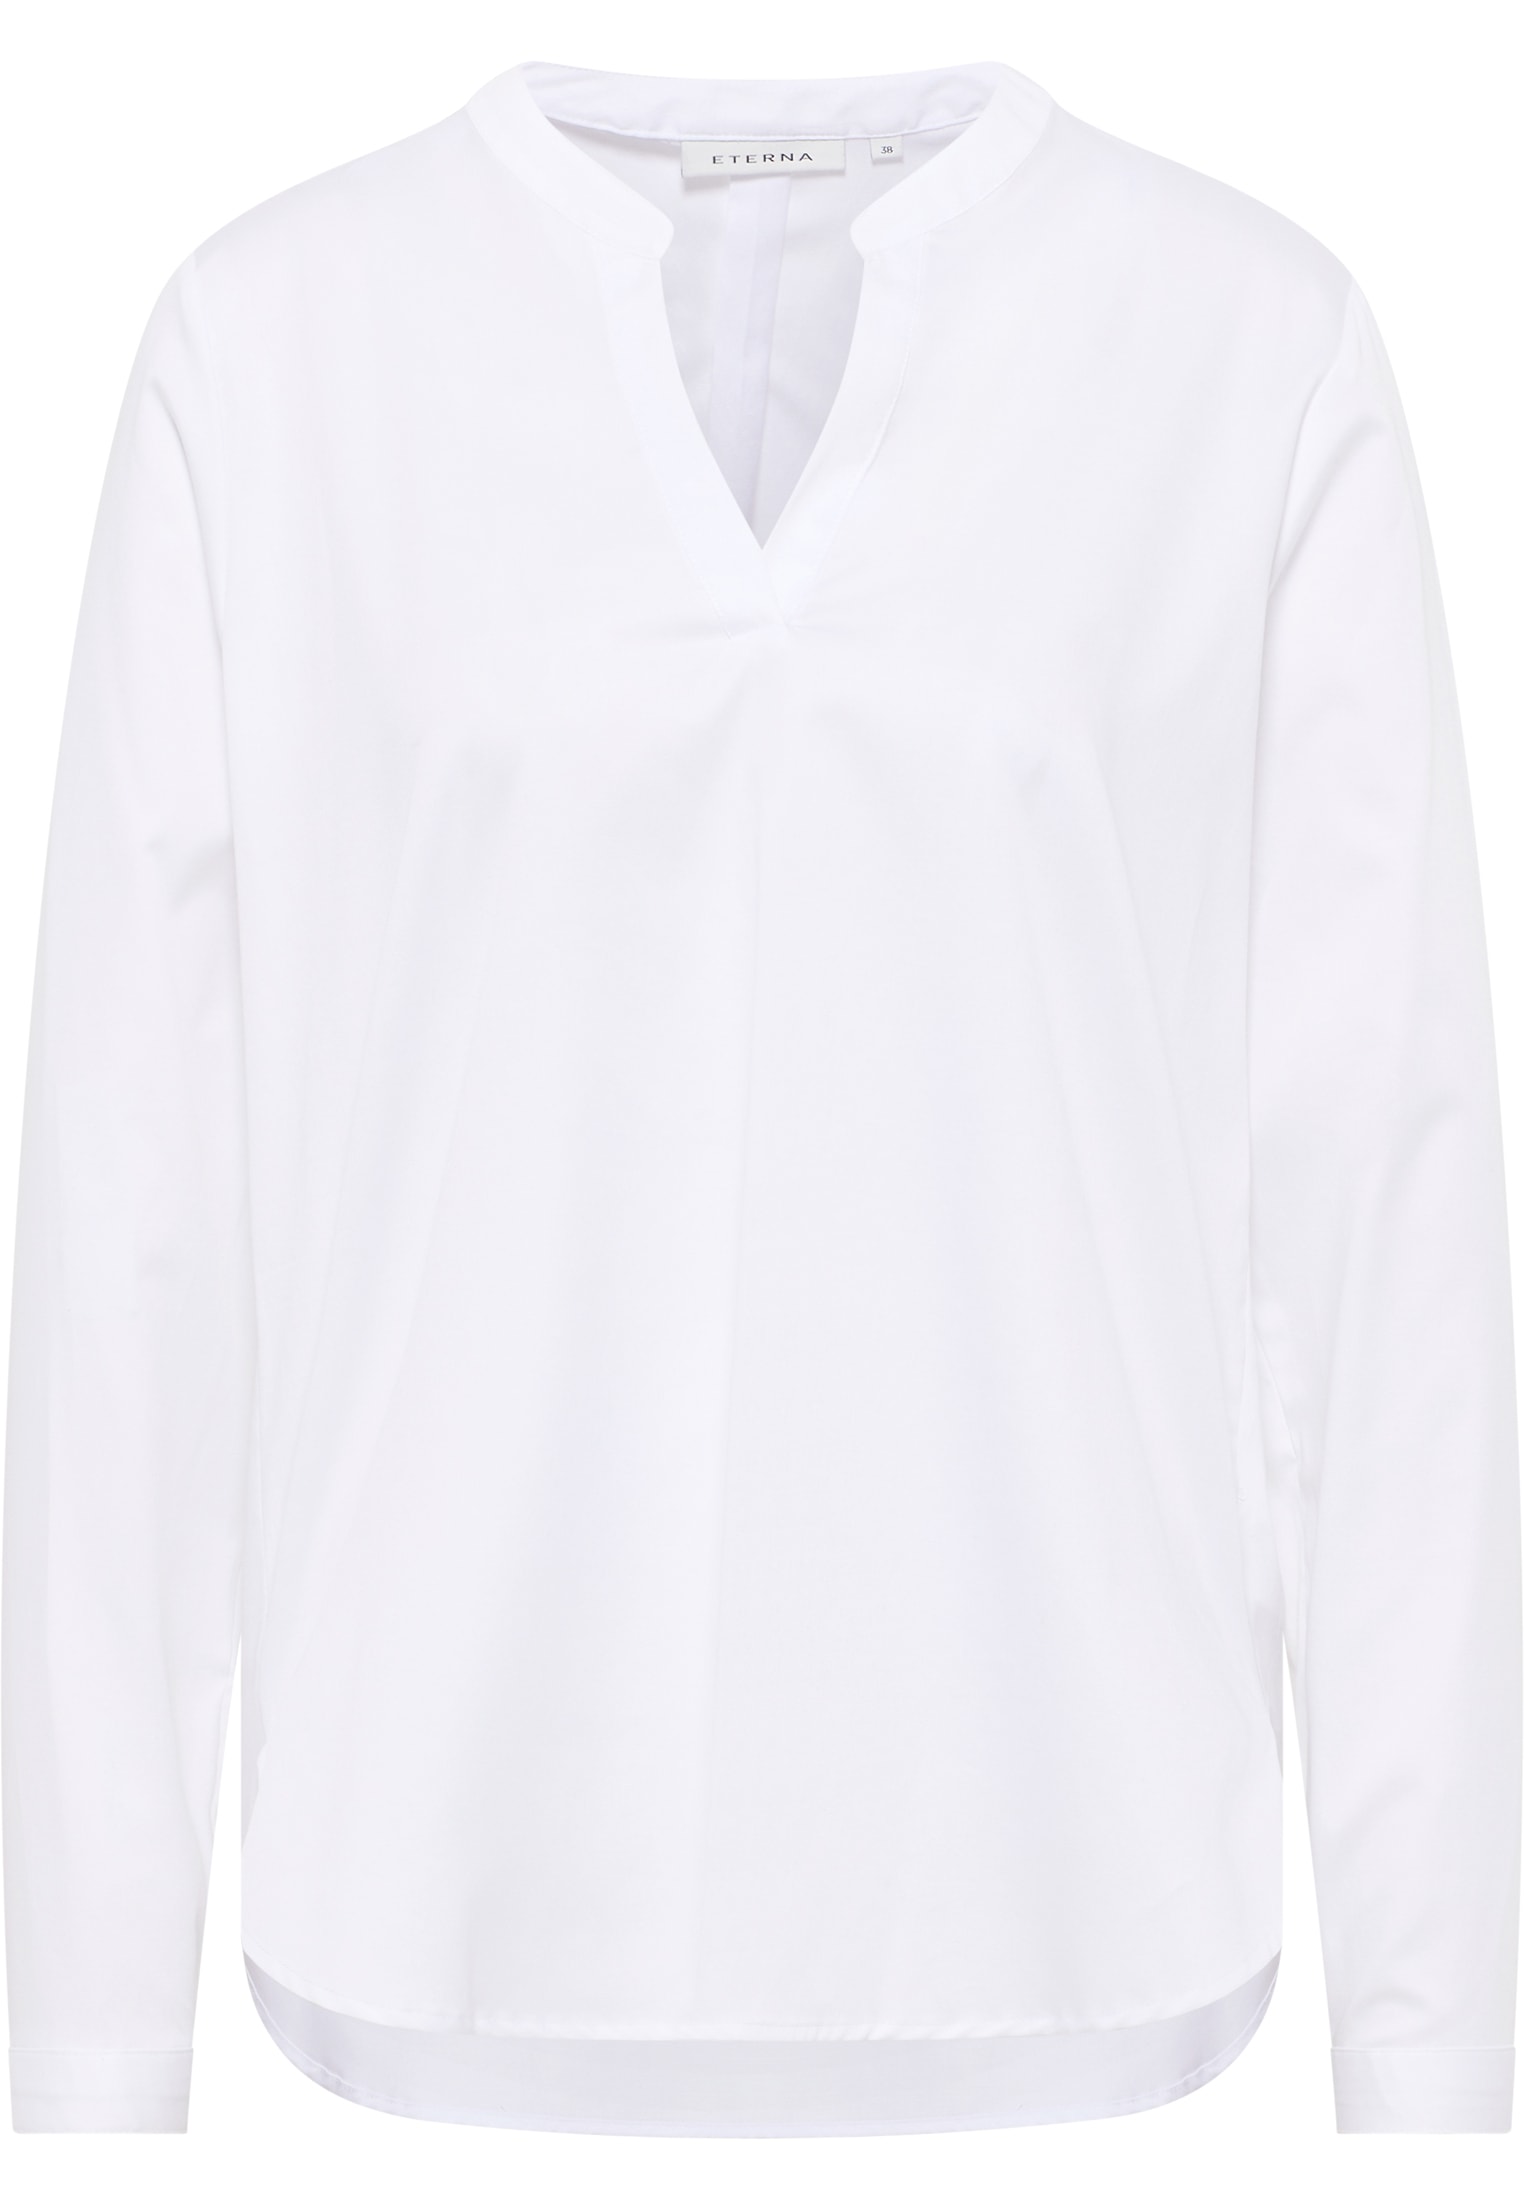 Satin Shirt Bluse in weiß unifarben | weiß | 44 | Langarm |  2BL00618-00-01-44-1/1